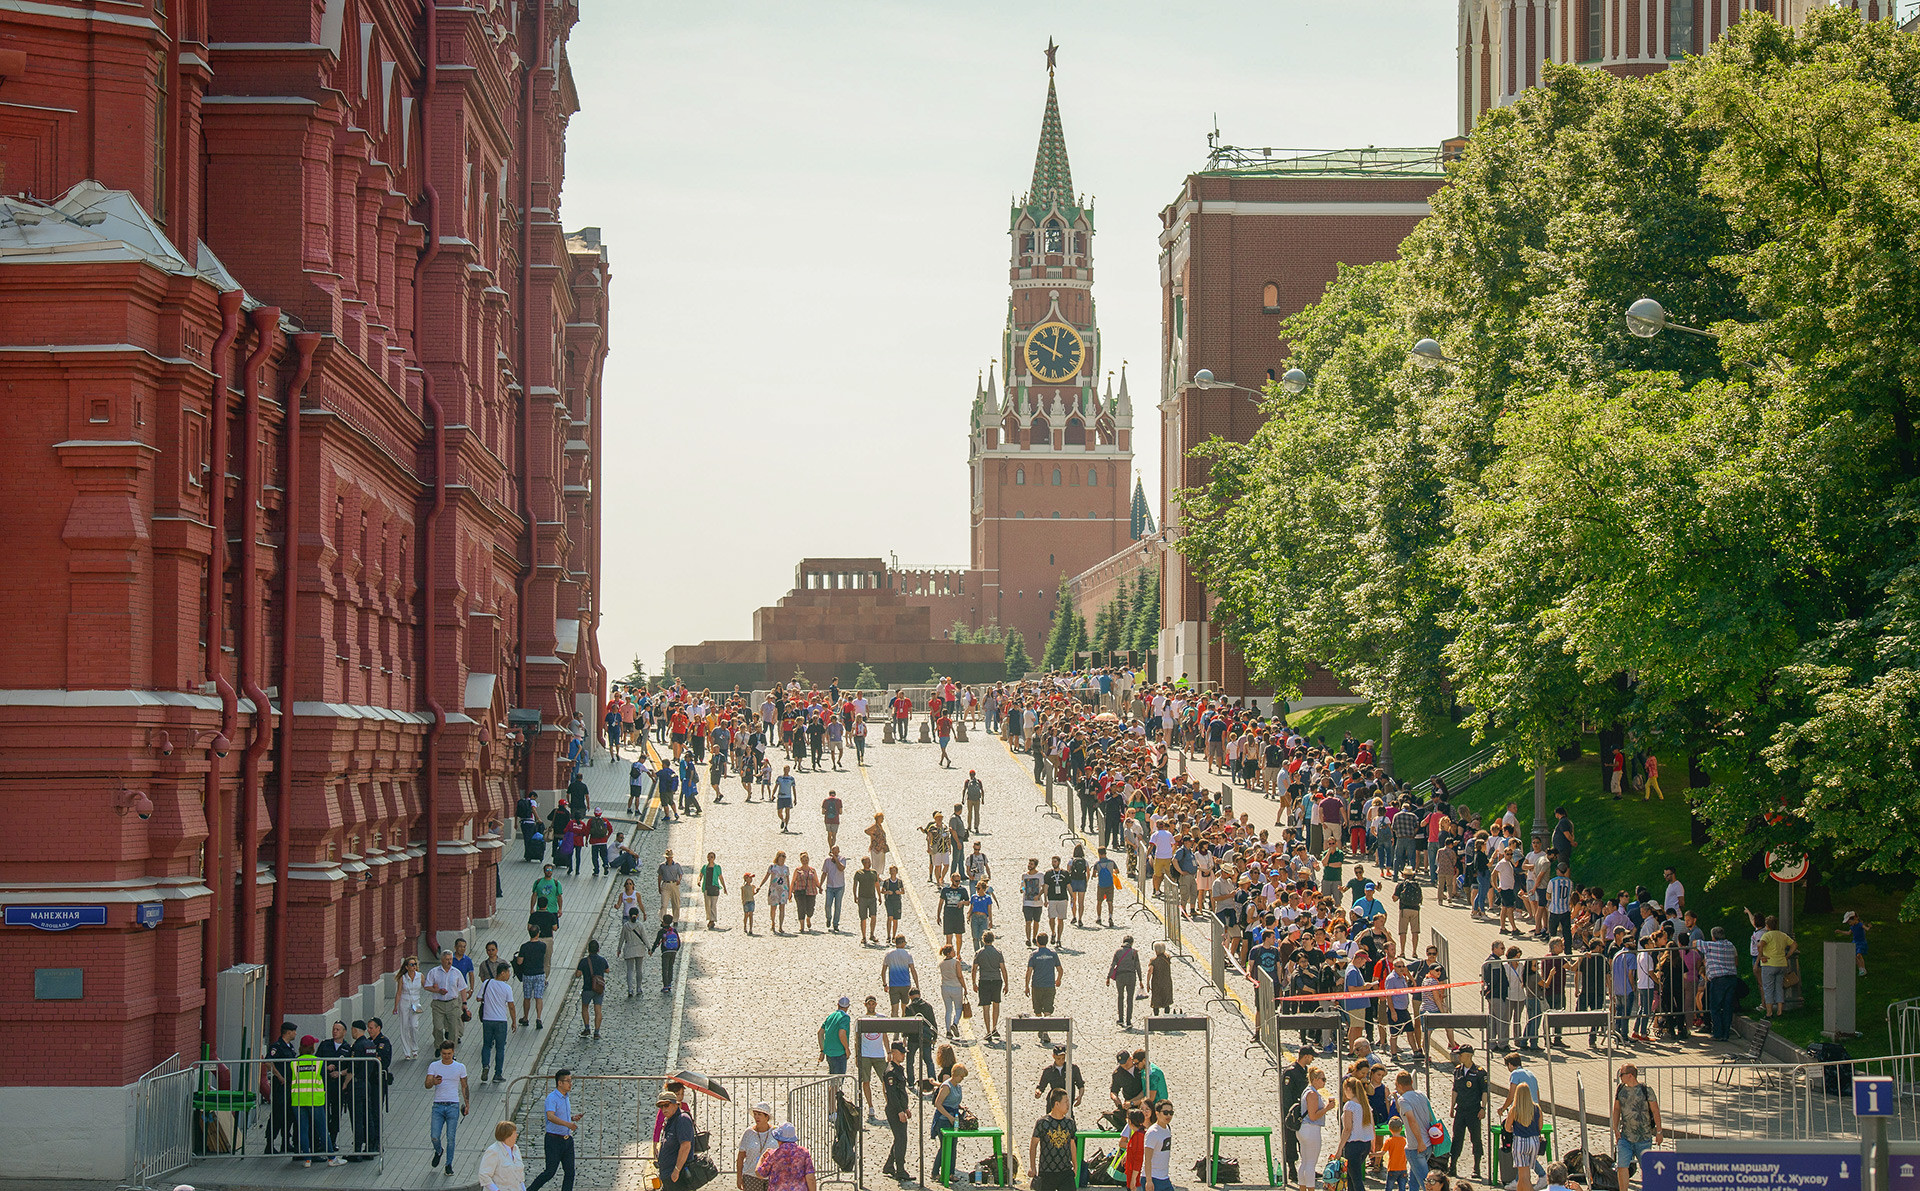 Turisti čakajo v koloni pred Leninovim mavzolejem na Rdečem trgu, Moskva